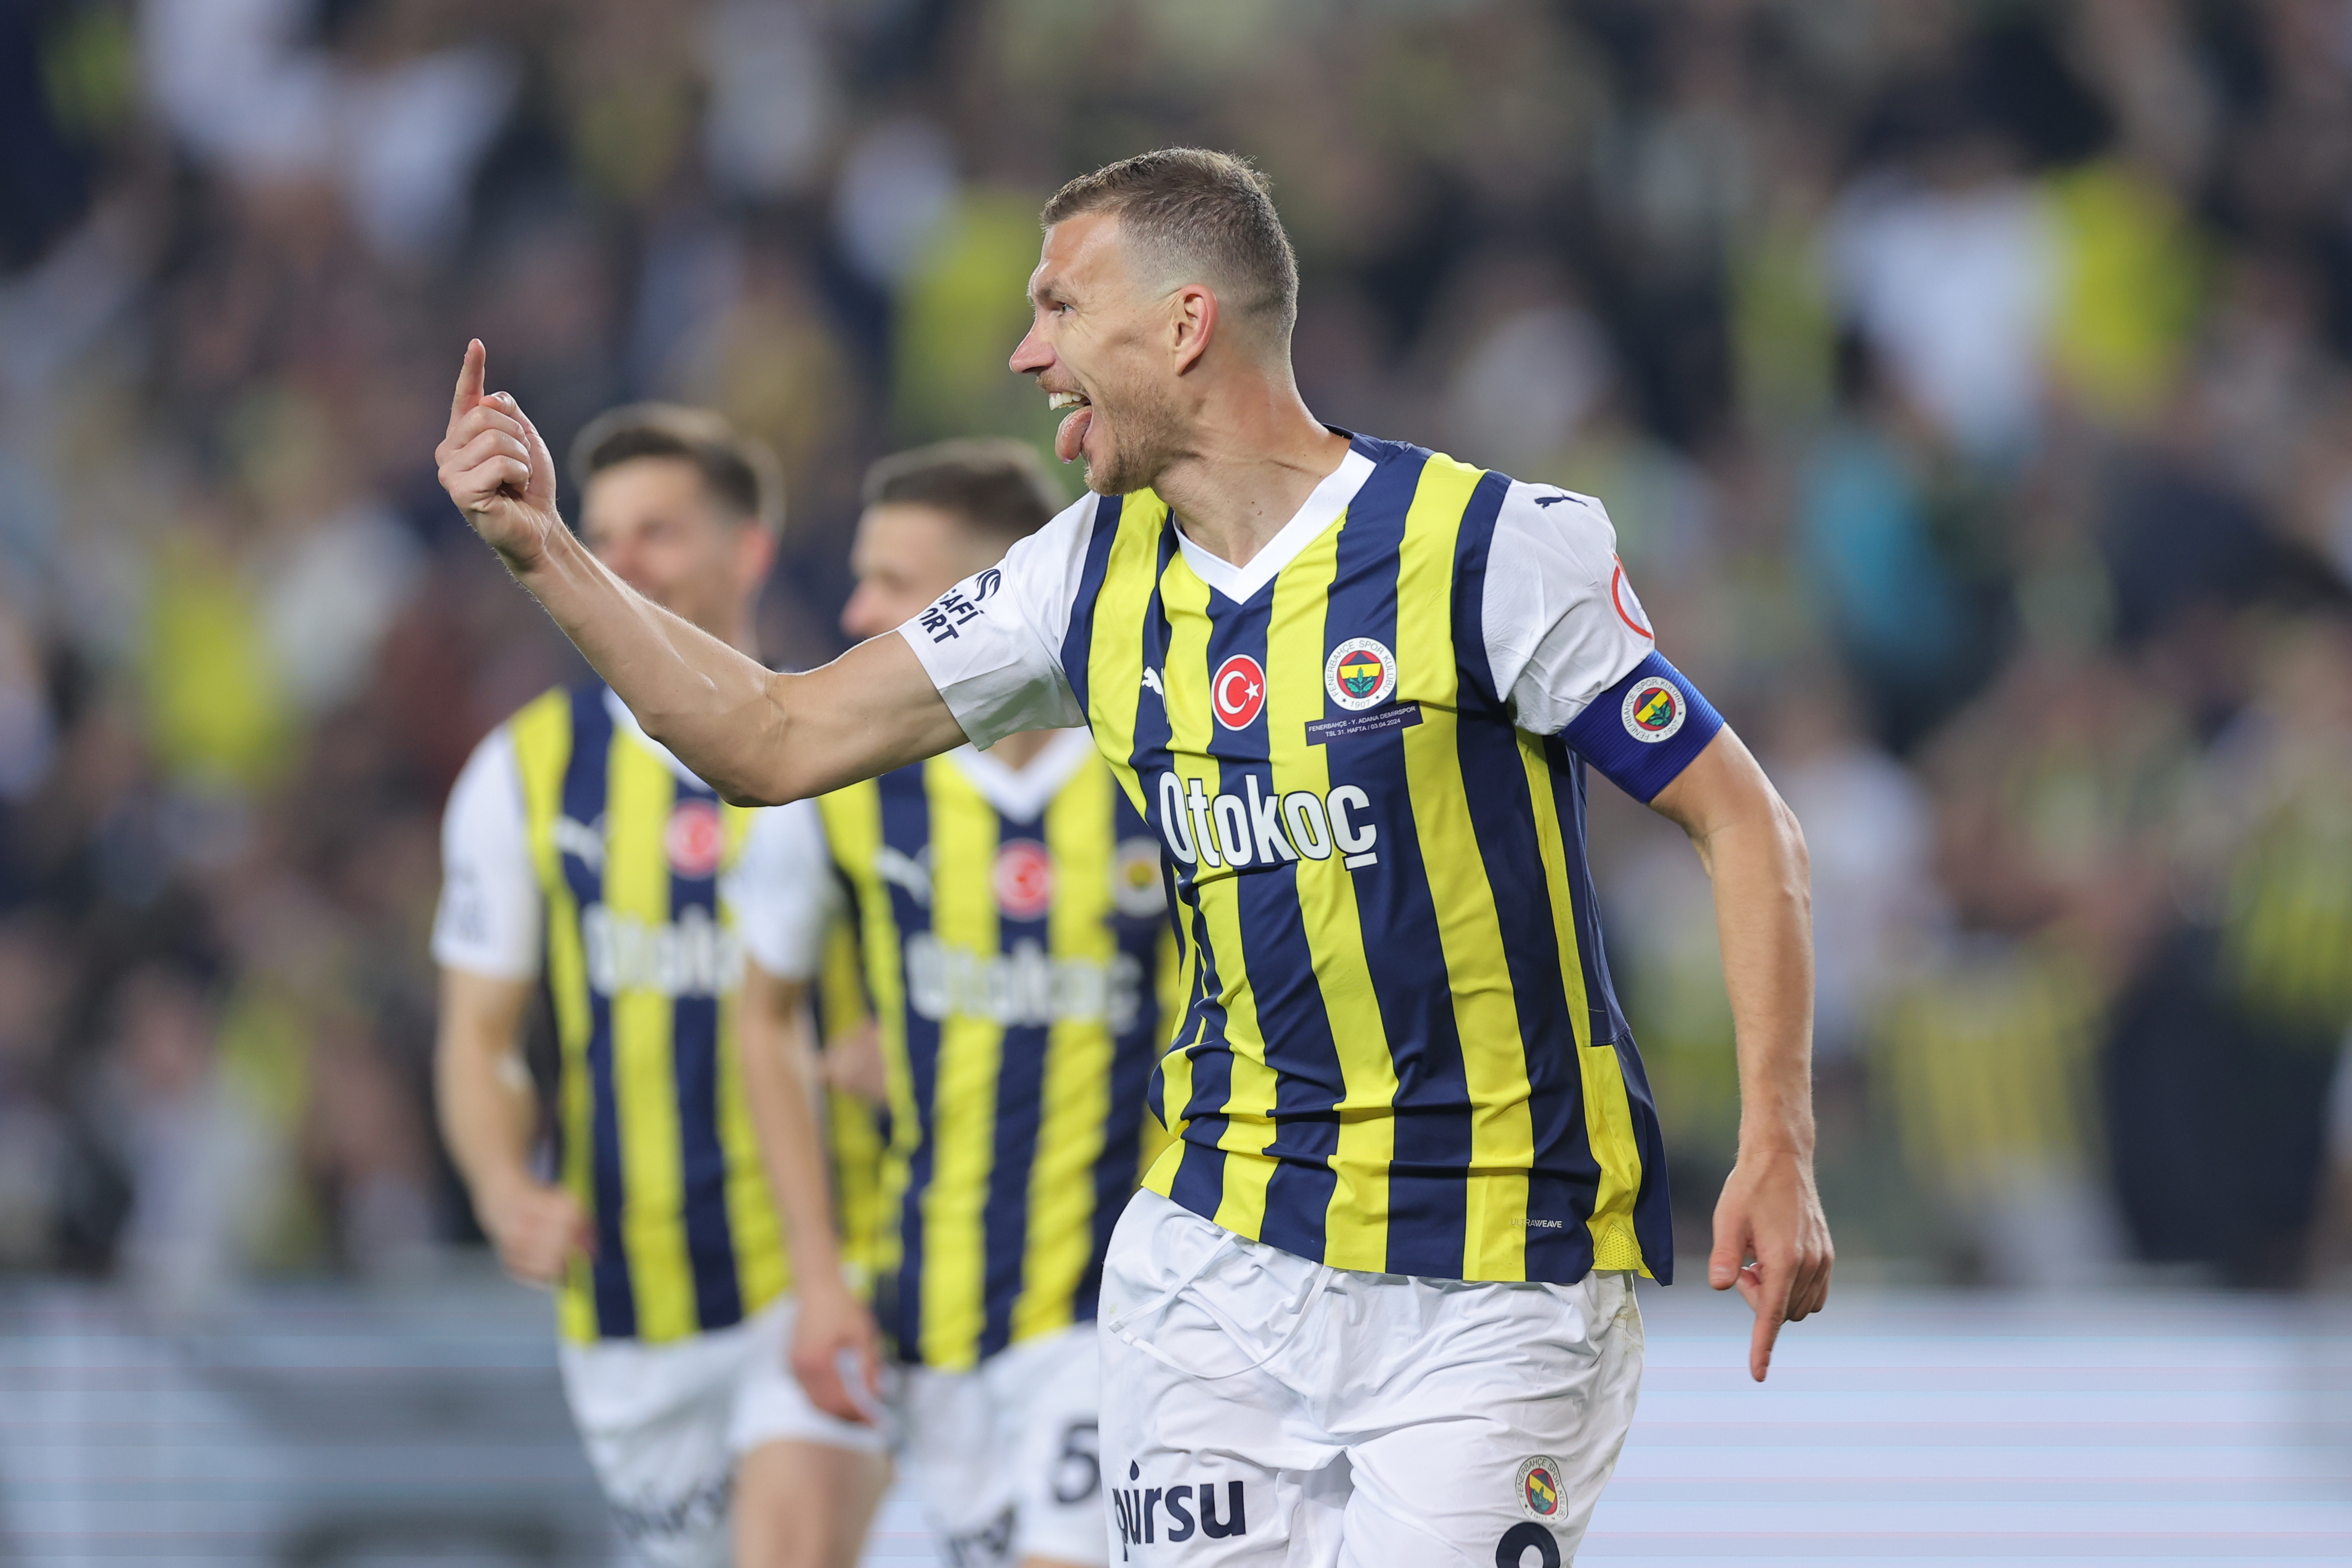 Süper Lig : Fenerbahçe en colle 6 à Istanbulspor mais termine deuxième